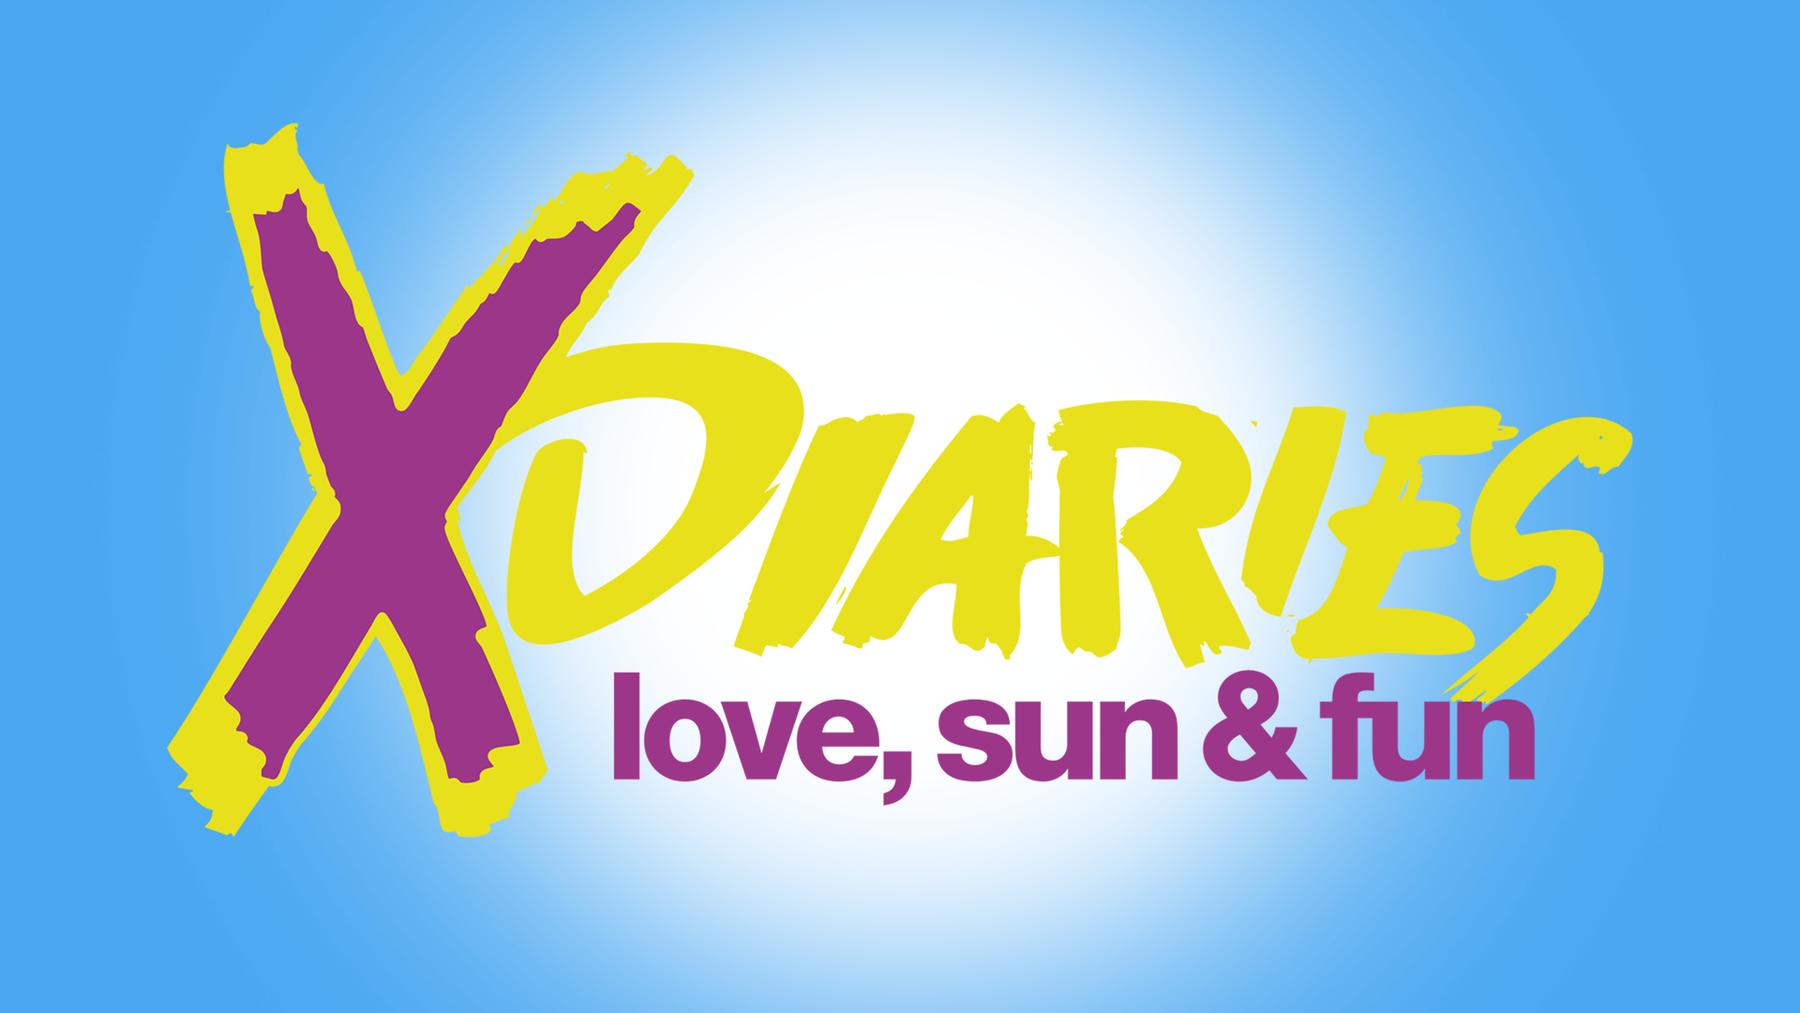 X-Diaries - love, sun & fun